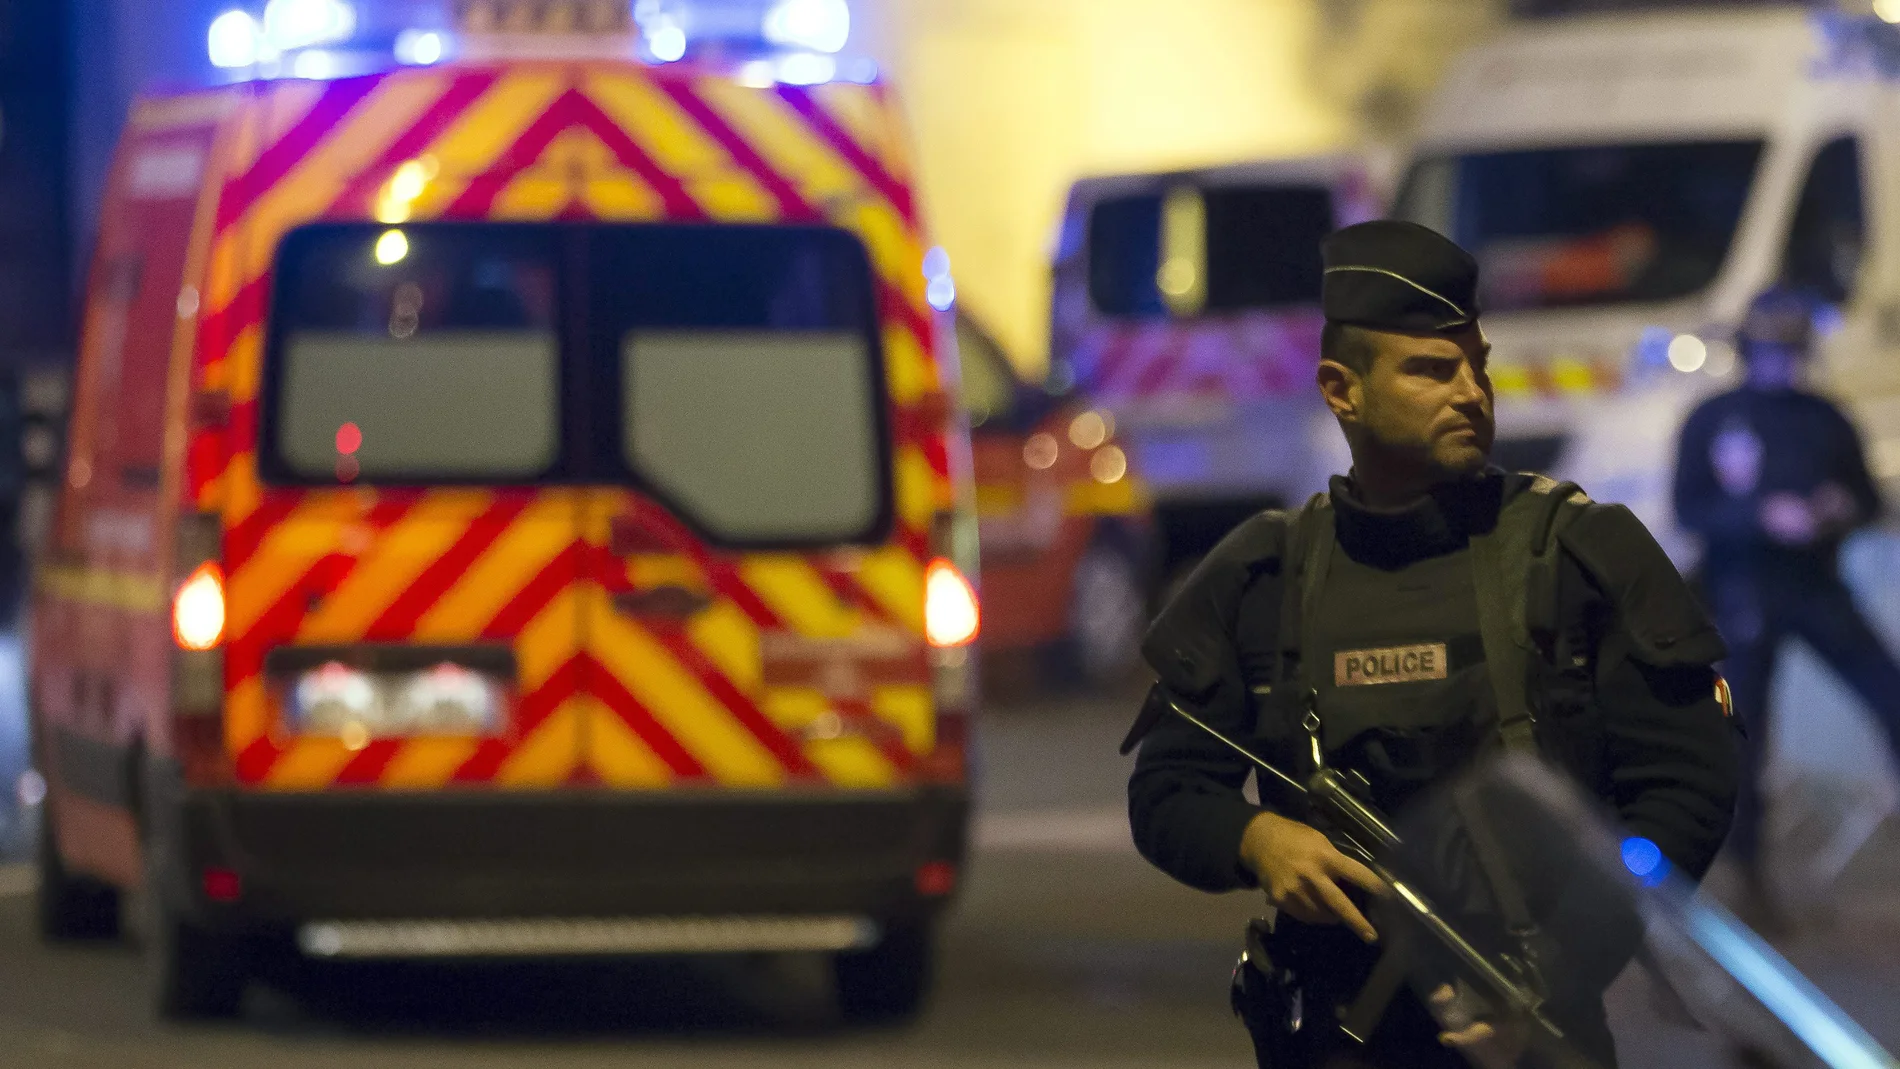 Policía haciendo guardia en Francia